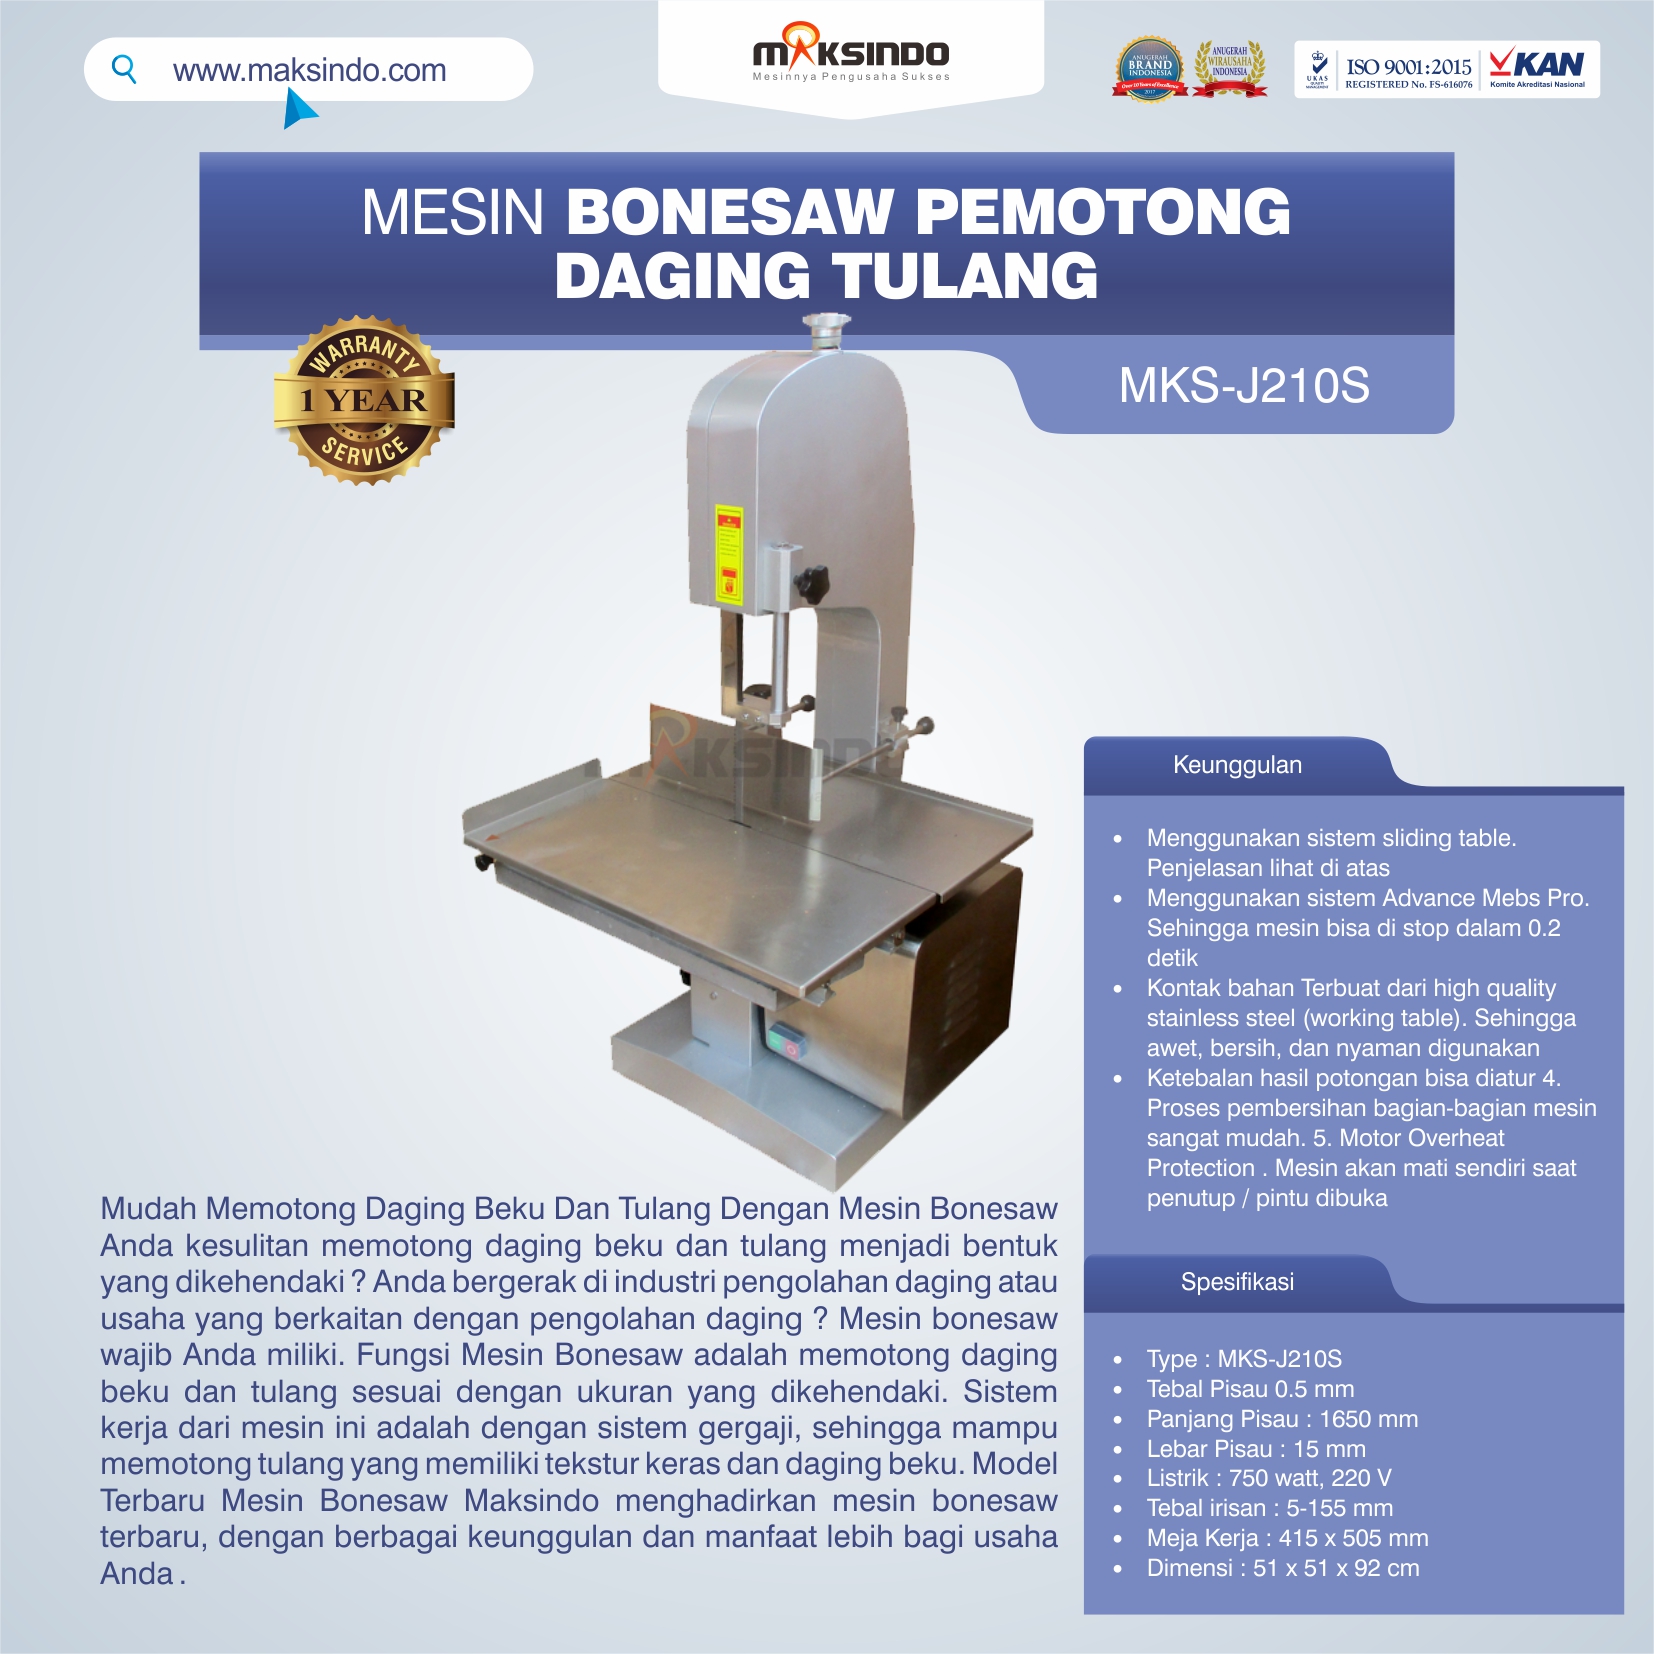 Jual Mesin Bonesaw Pemotong Daging Tulang (MKS-J210S) di Blitar